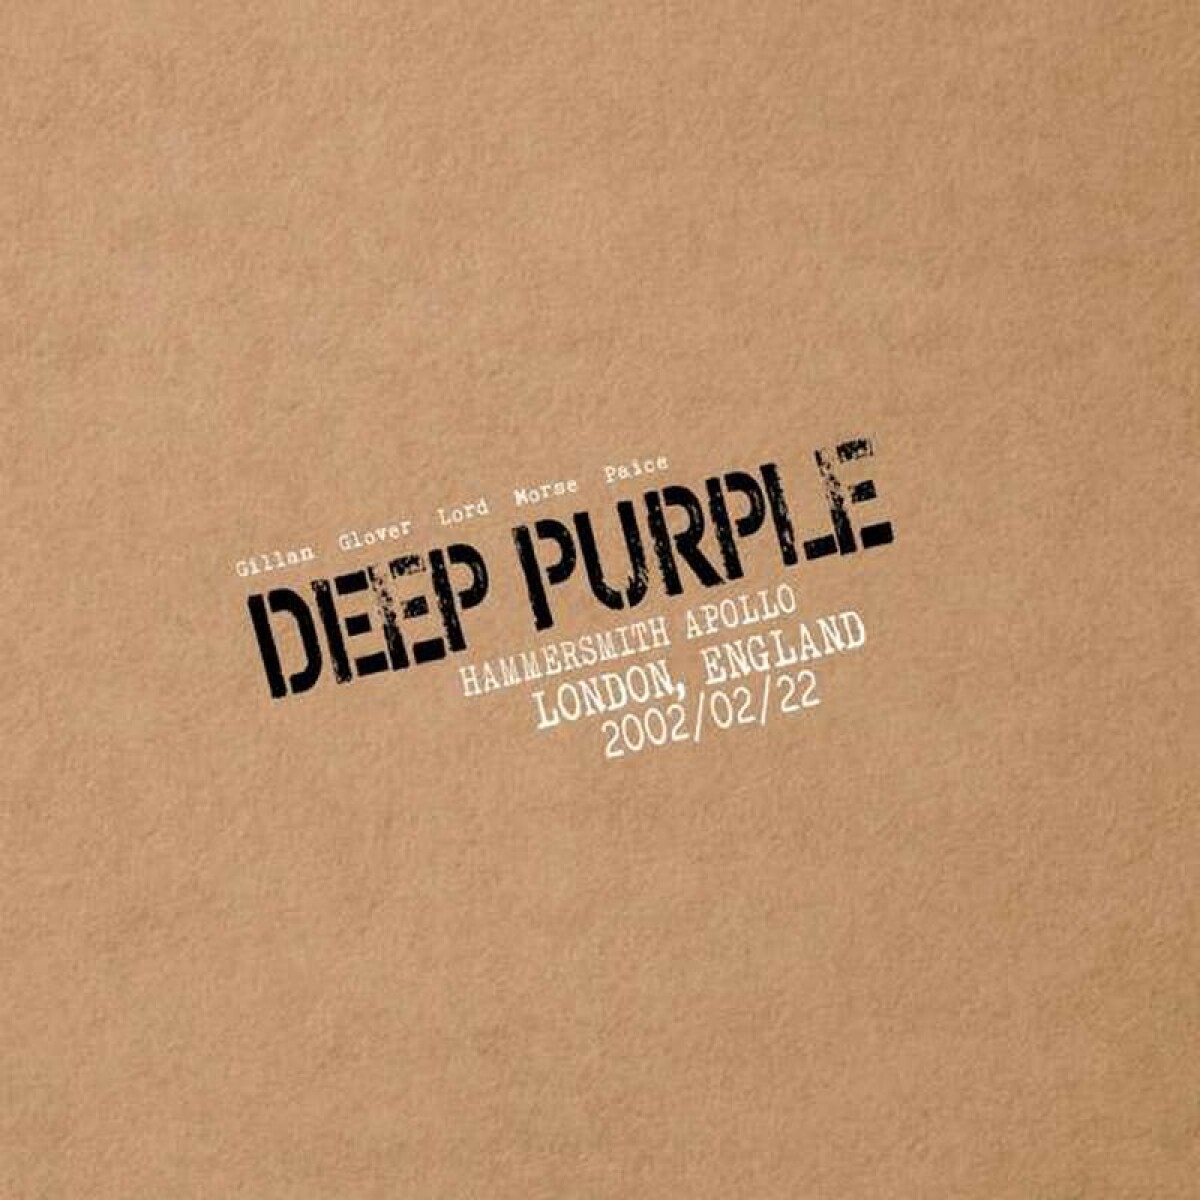 Deep Purple - Live In London 2002 - Vinilo 